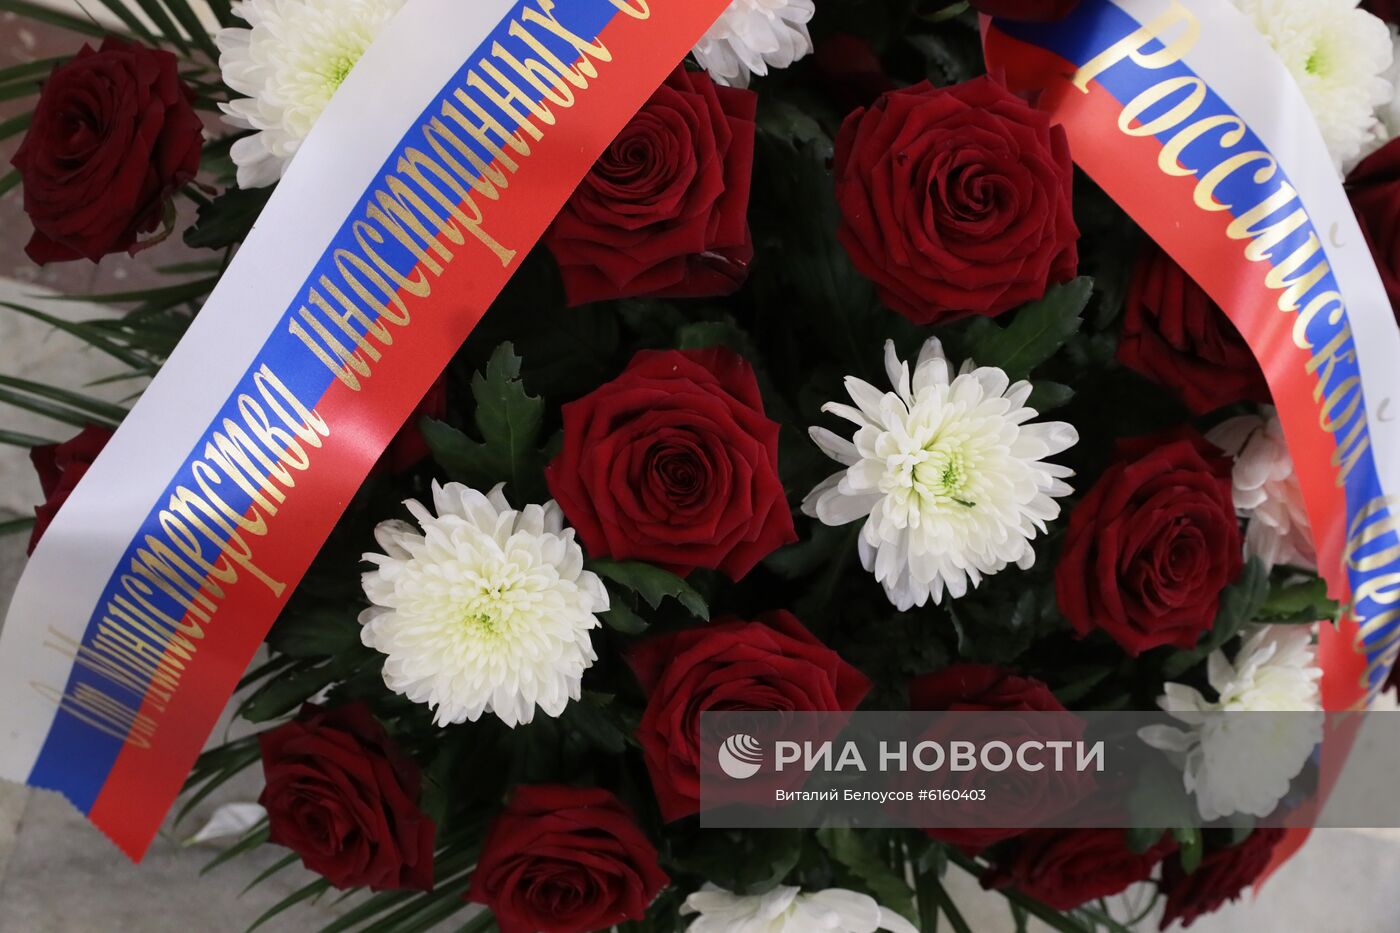 Глава МИД РФ С. Лавров возложил цветы к памятным доскам